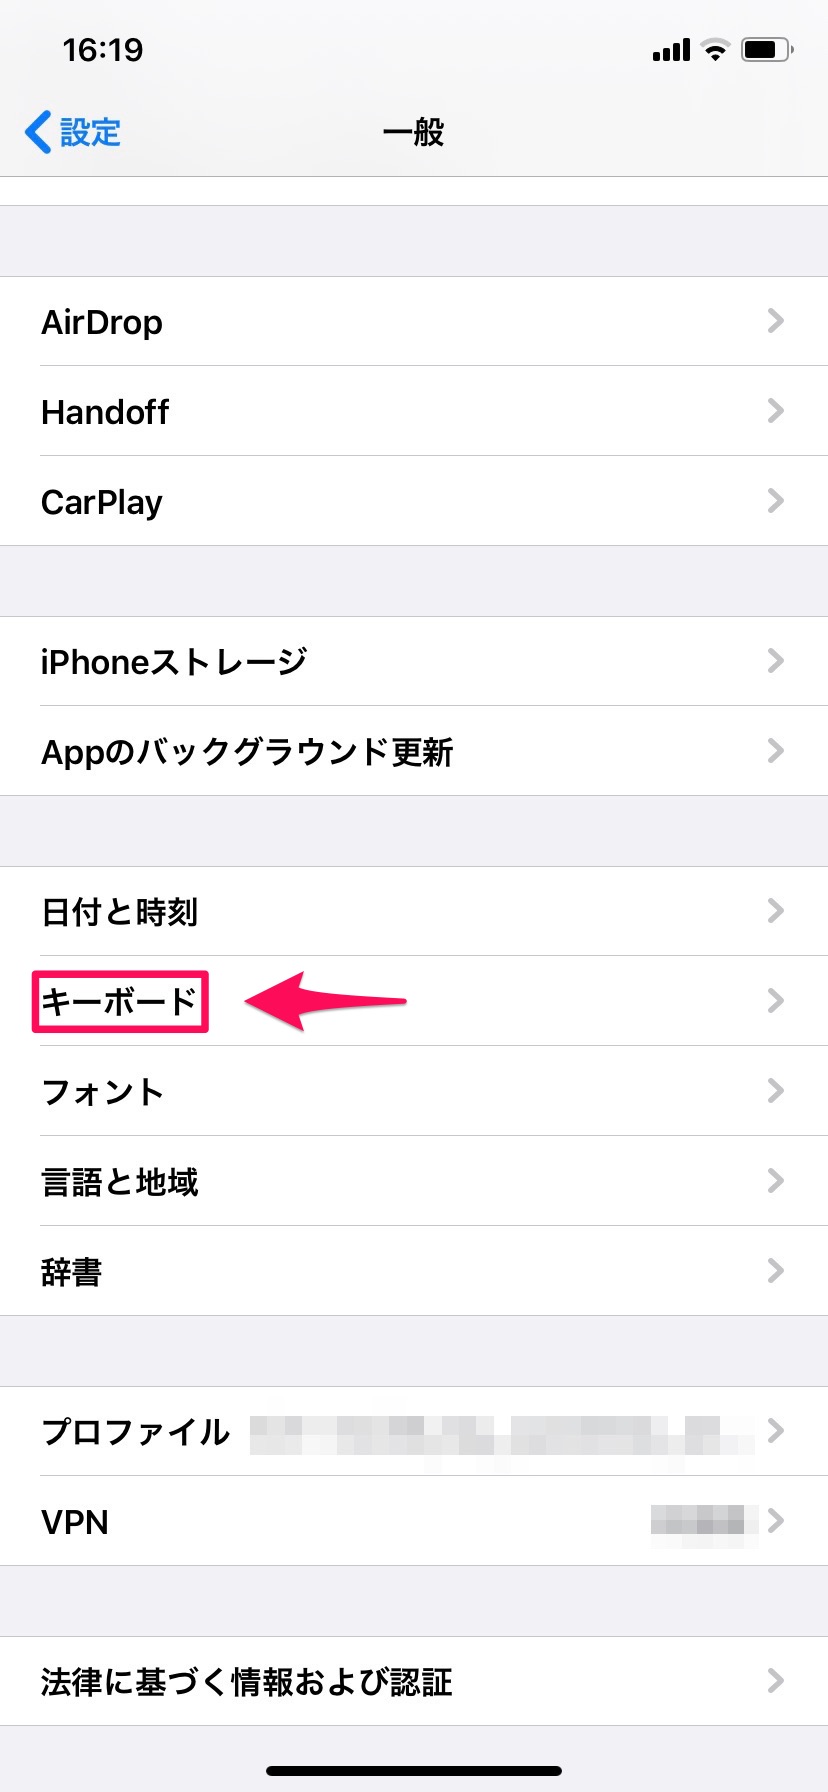 Iphoneのキーボードを使いこなせ 便利な設定や裏ワザを大公開 Apptopi